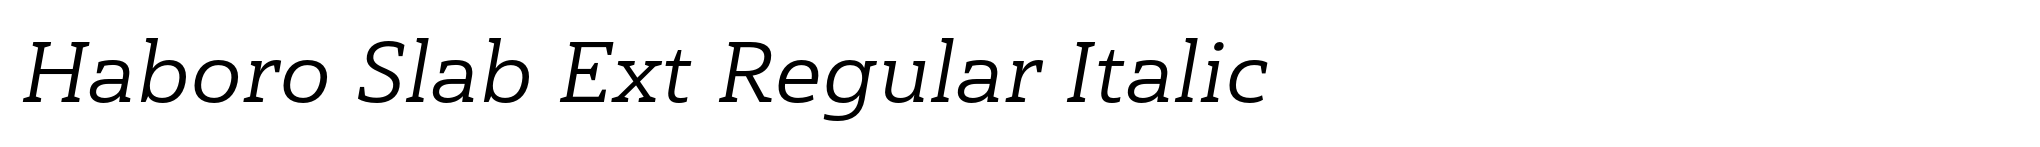 Haboro Slab Ext Regular Italic image